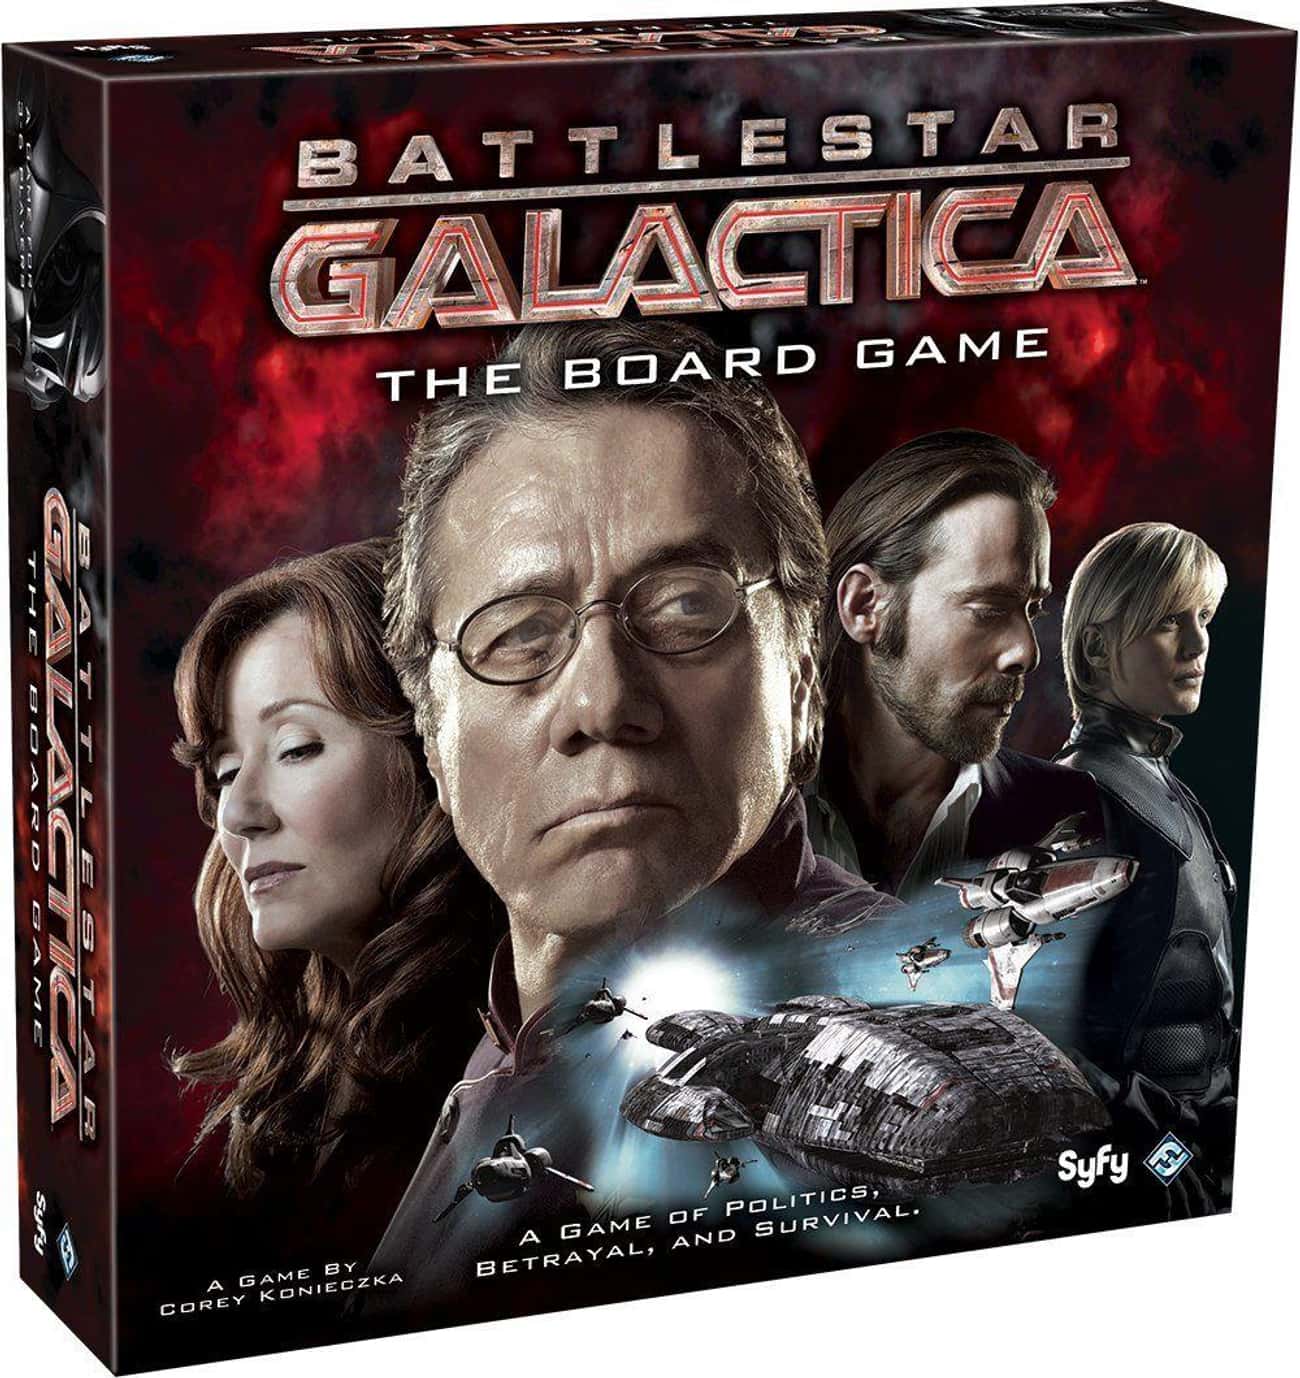 Игра звездная галактика. Звездный крейсер Галактика настолка. Звездный крейсер Галактика настольная игра. Battlestar Galactica настольная игра.